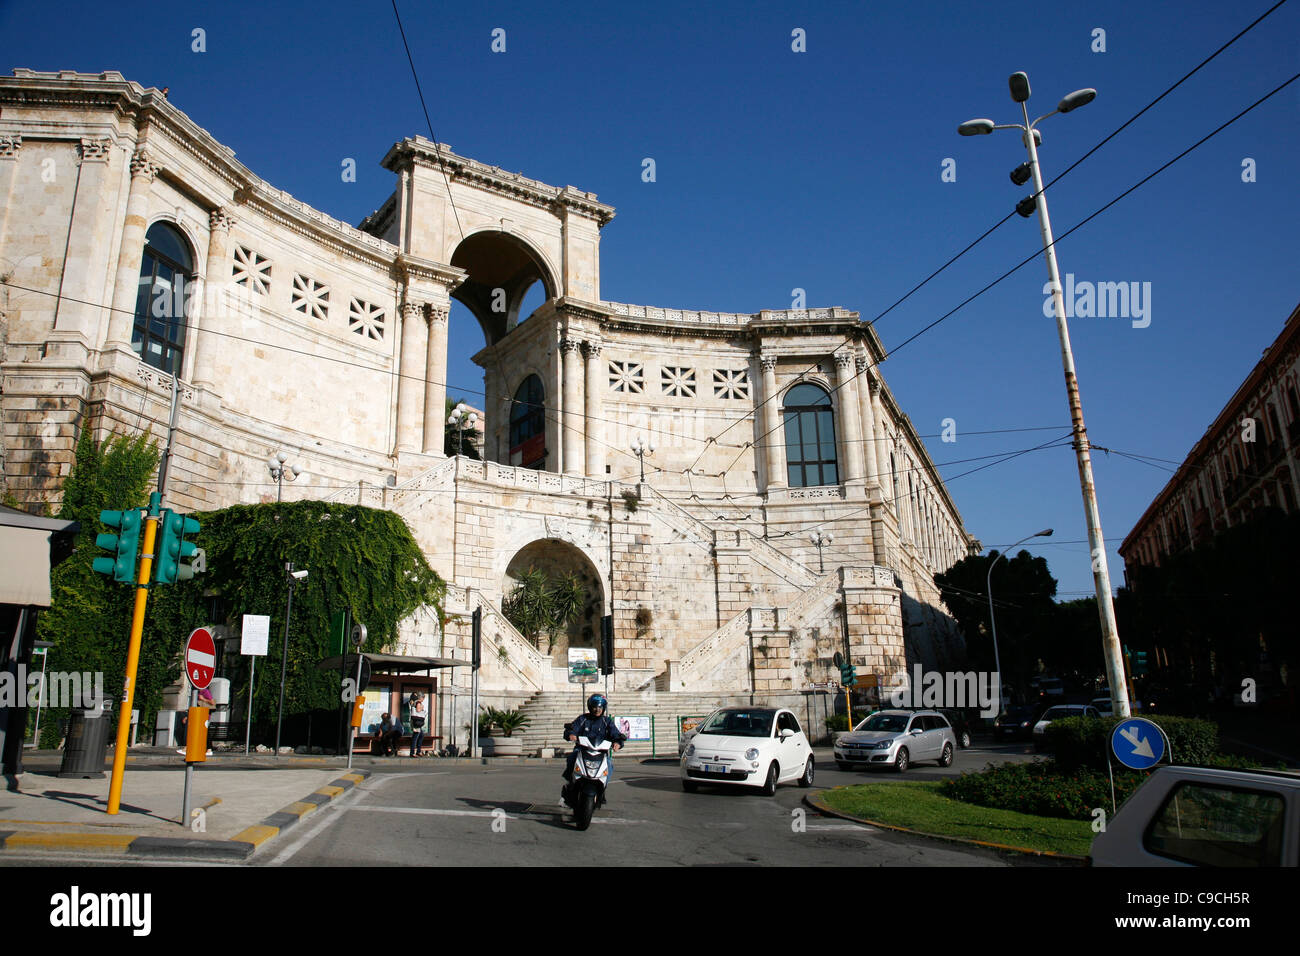 Bastione di San Remy, Cagliari, Sardinia, Italy. Stock Photo